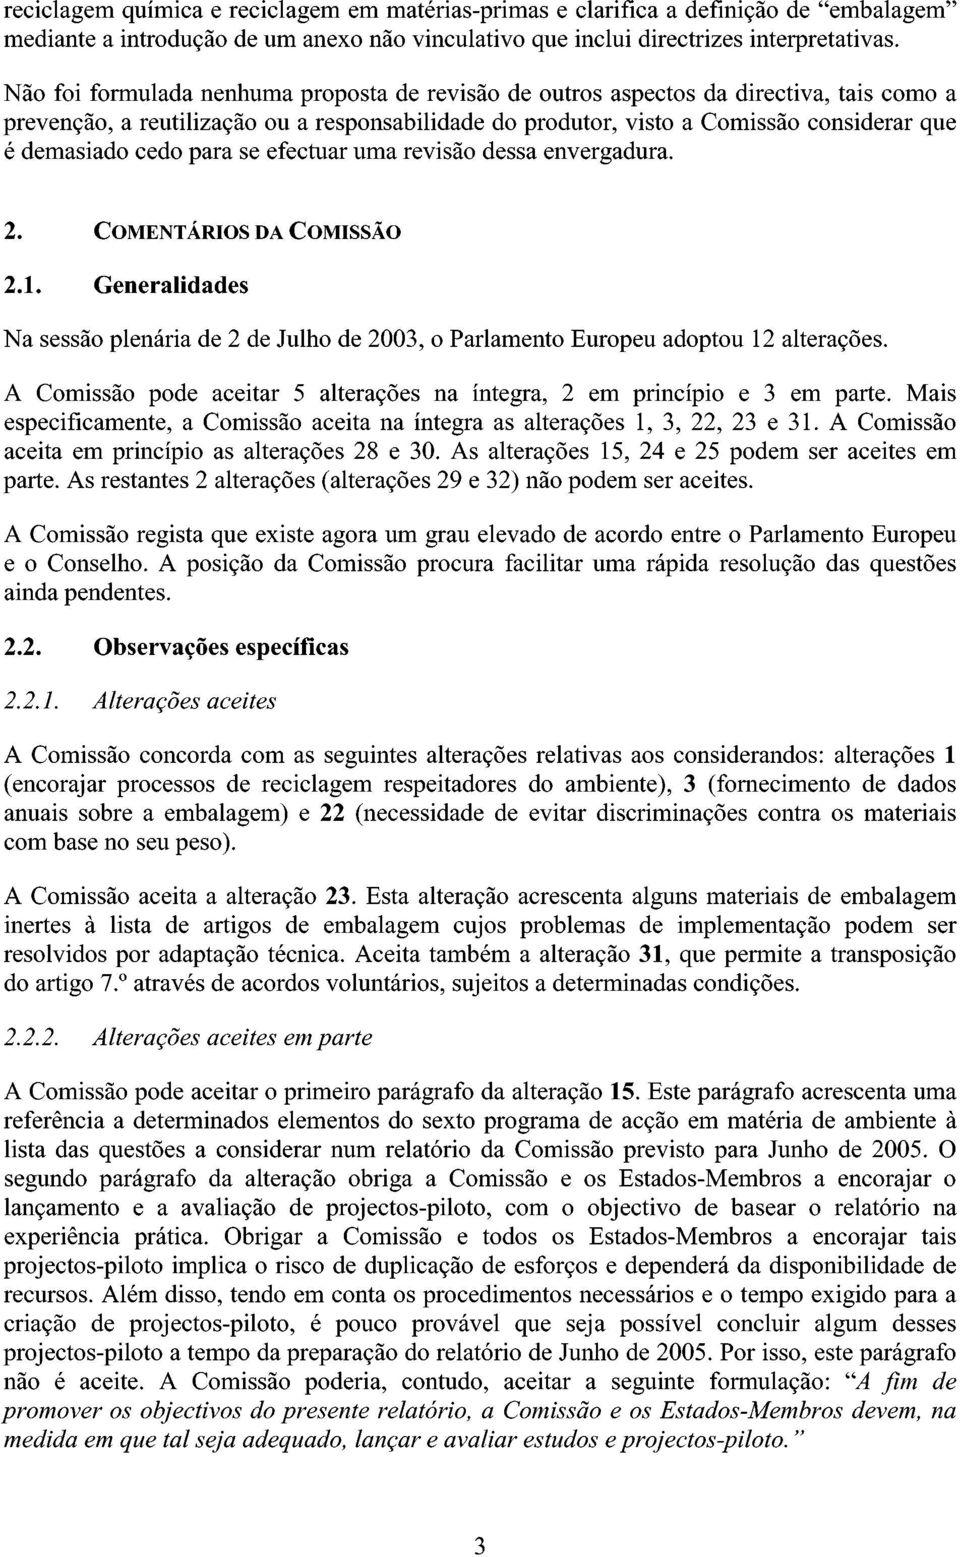 cedo para se efectuar uma revisão dessa envergadura. 2. COMENTÁRIOS DA COMISSÃO 2.1. Generalidades Na sessão plenária de 2 de Julho de 2003, o Parlamento Europeu adoptou 12 alterações.